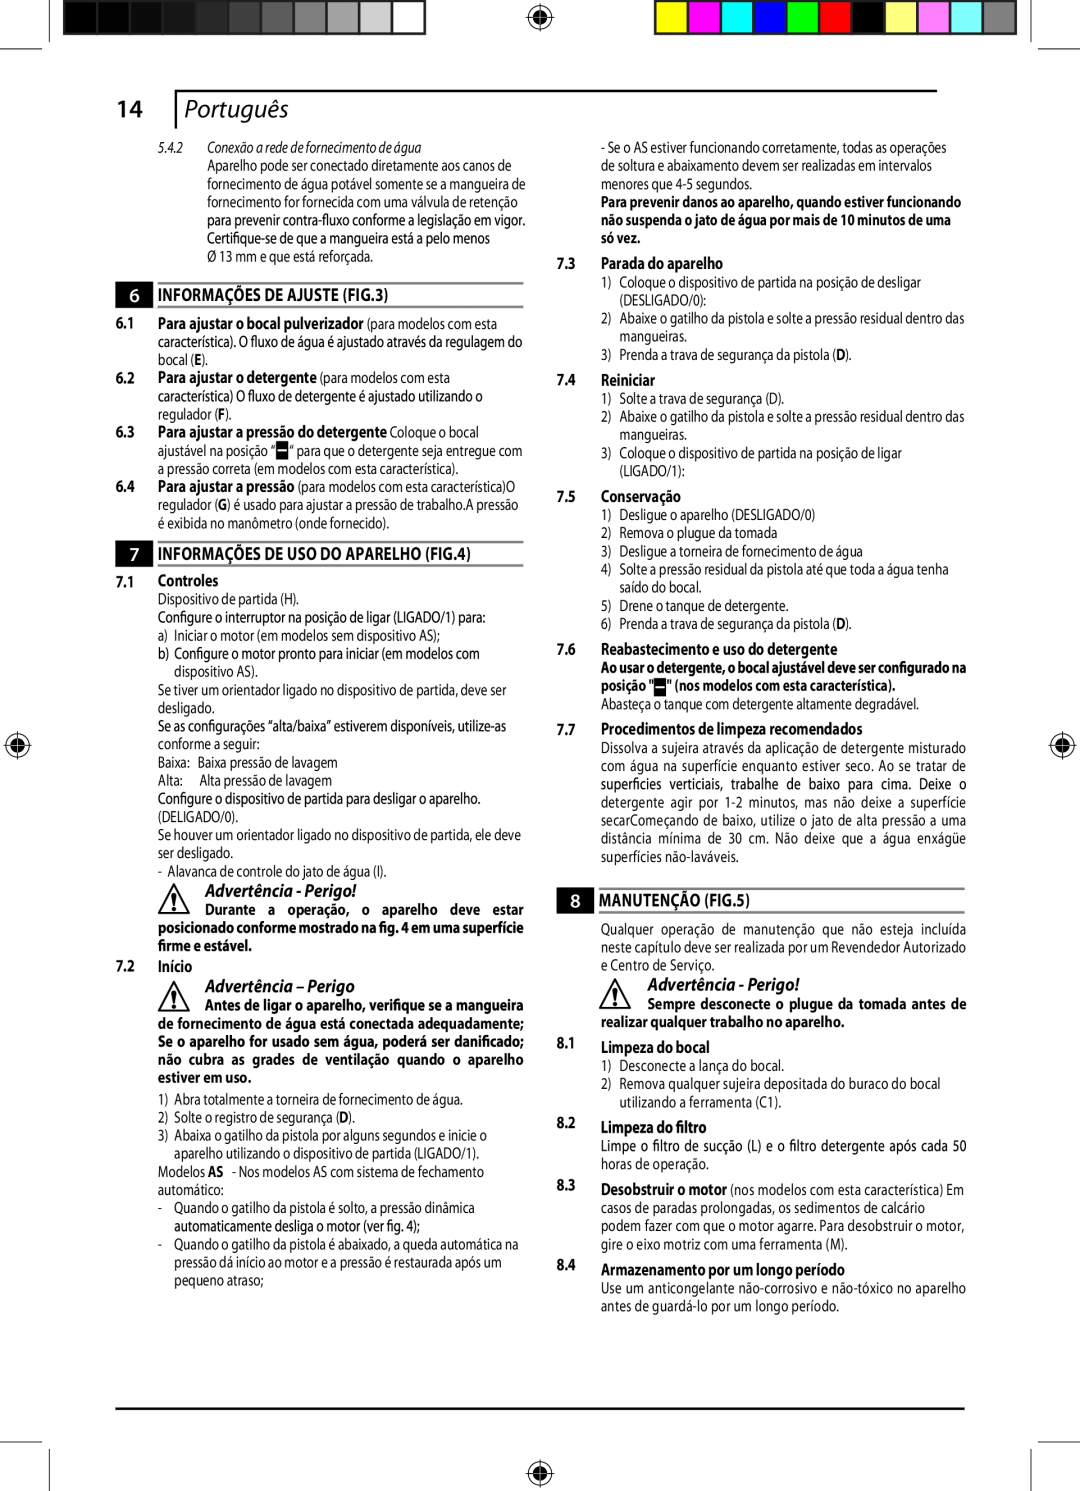 Black & Decker 662275-02, PW1550 instruction manual Português, Informações De Ajuste, Advertência - Perigo, Manutenção 